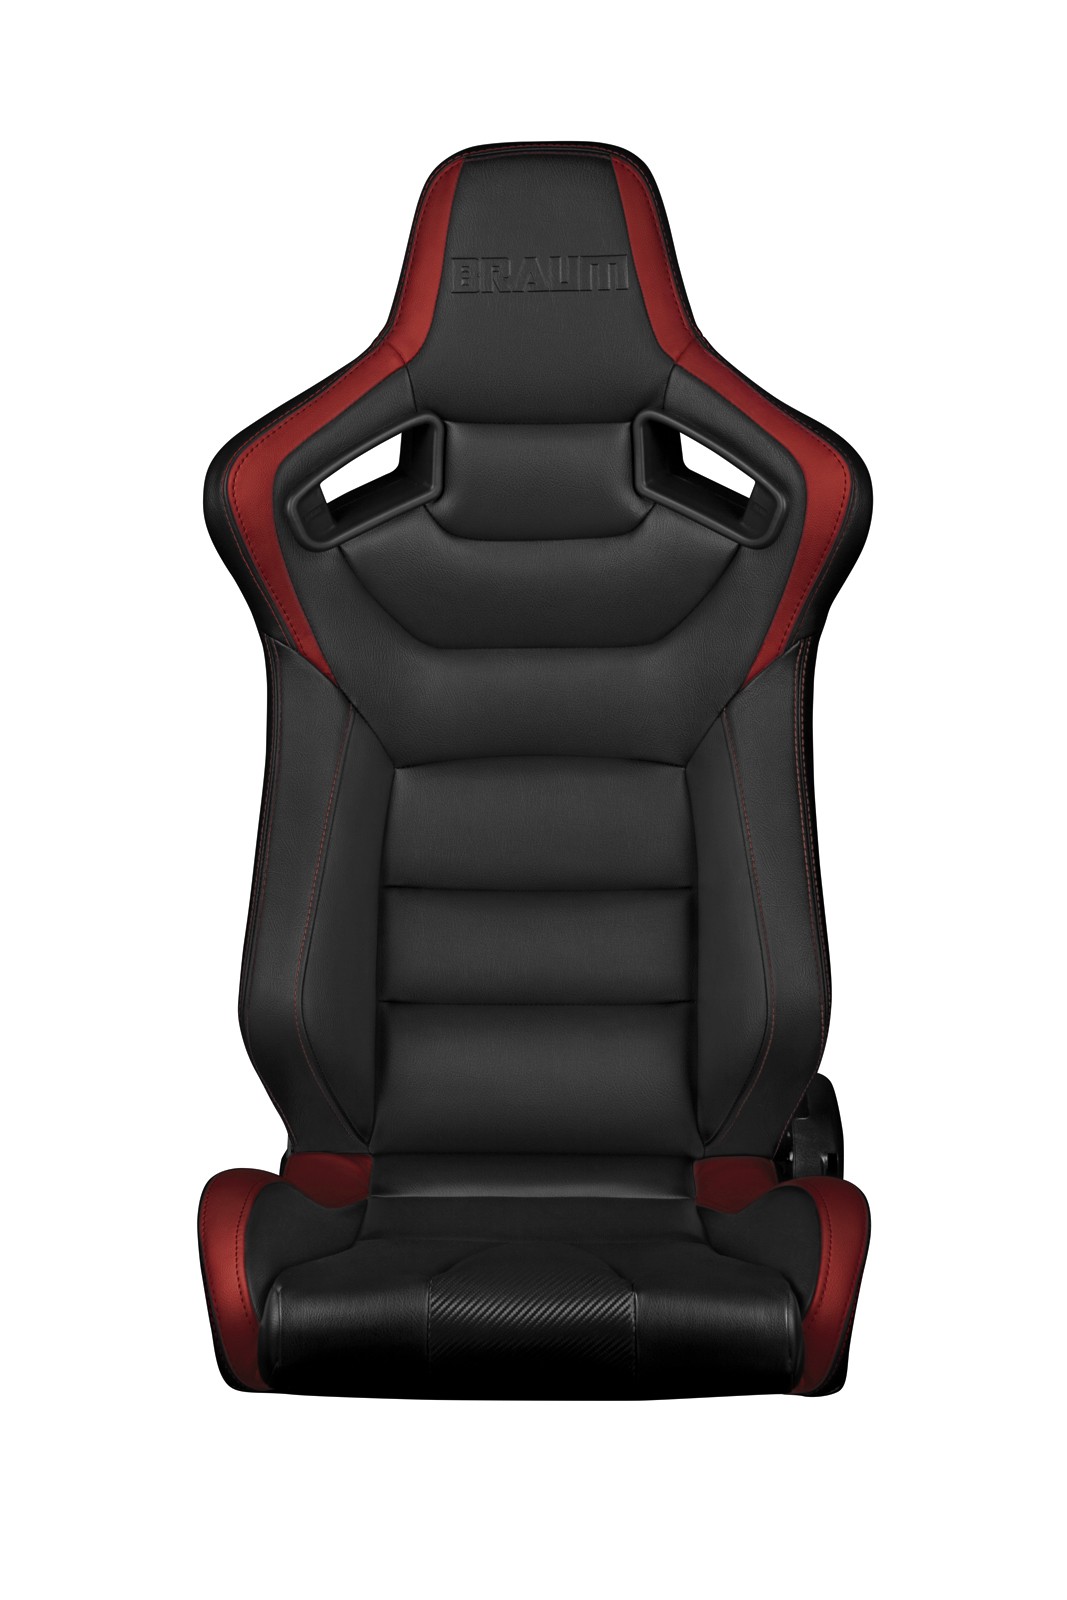 Braum Elite Series Racing Seats (Black & Red)